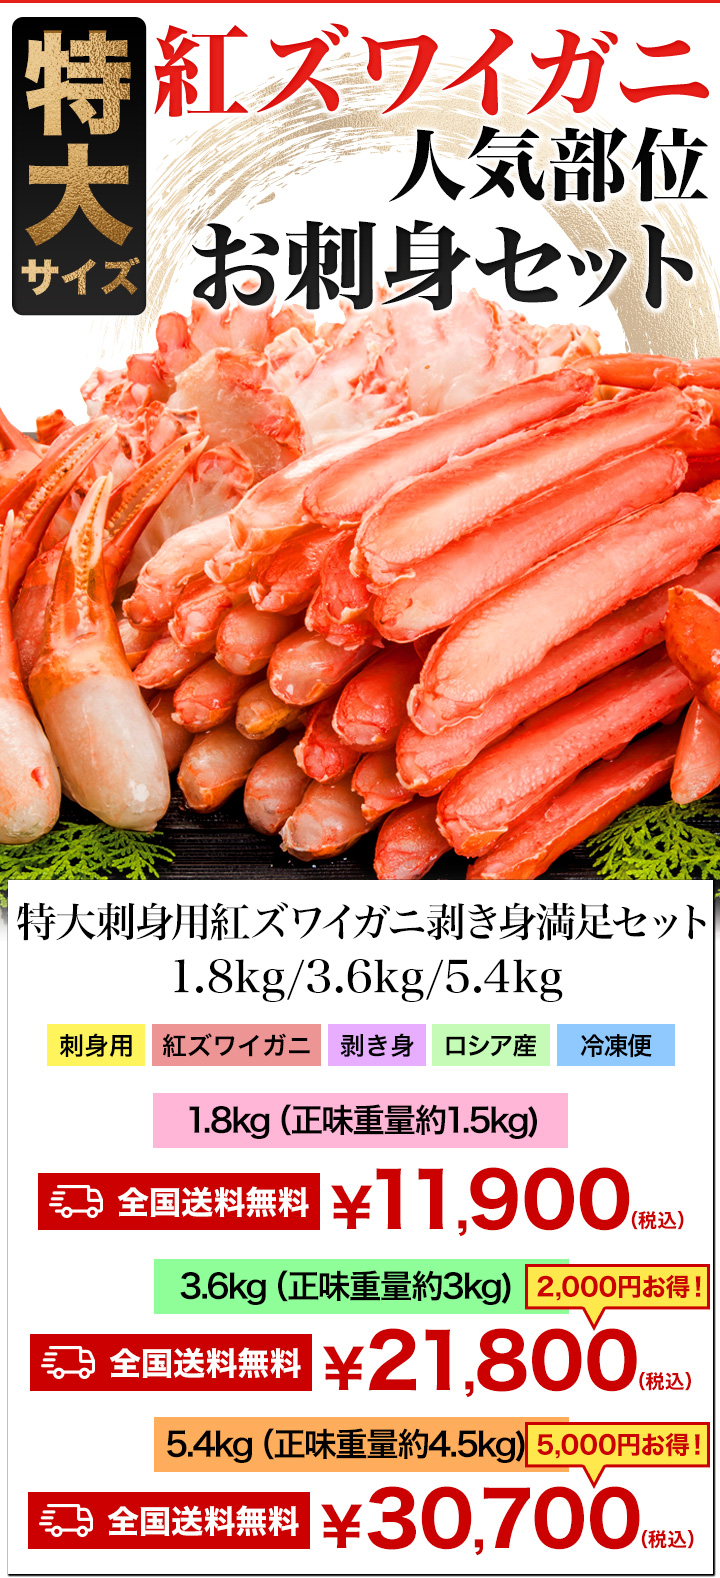 [. скидка купон распространение средний ]1.8kg очень большой . sashimi для красный краб-стригун шелушение .. комплект Poe shon...... краб краб . sashimi бесплатная доставка по всей стране 